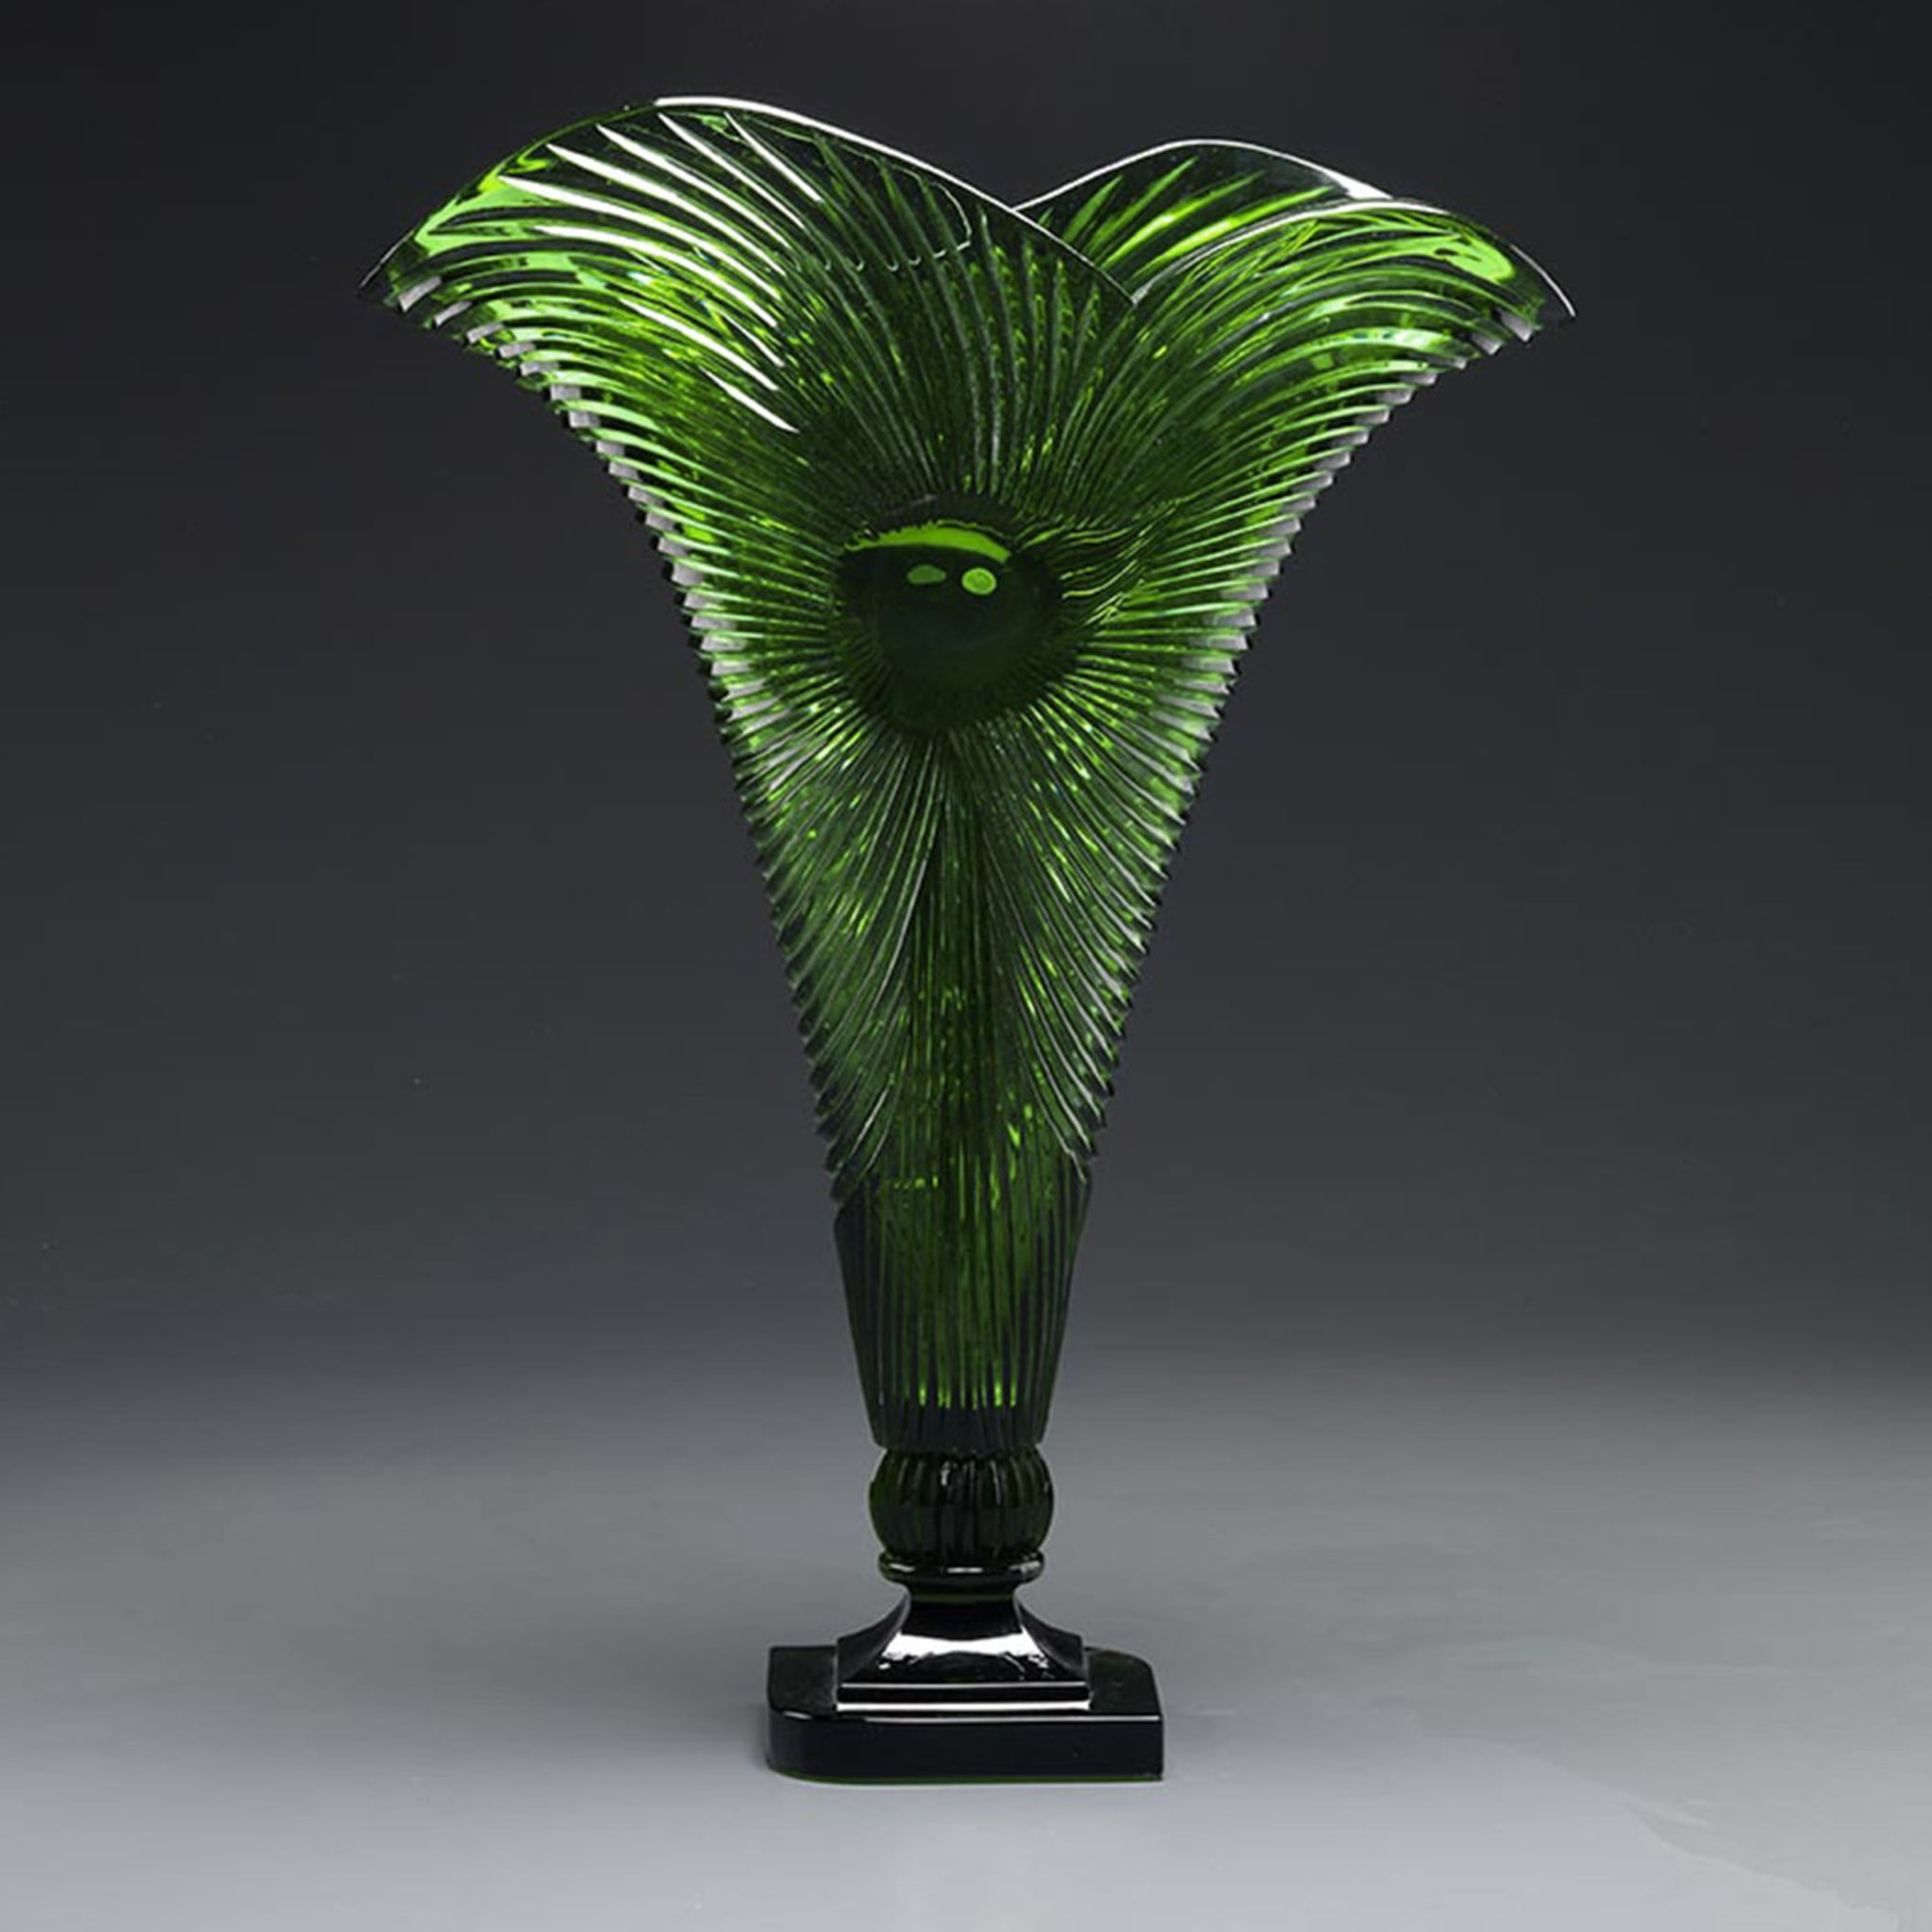 Crystal Fan Vase in Malachite Green - Alternative view 1